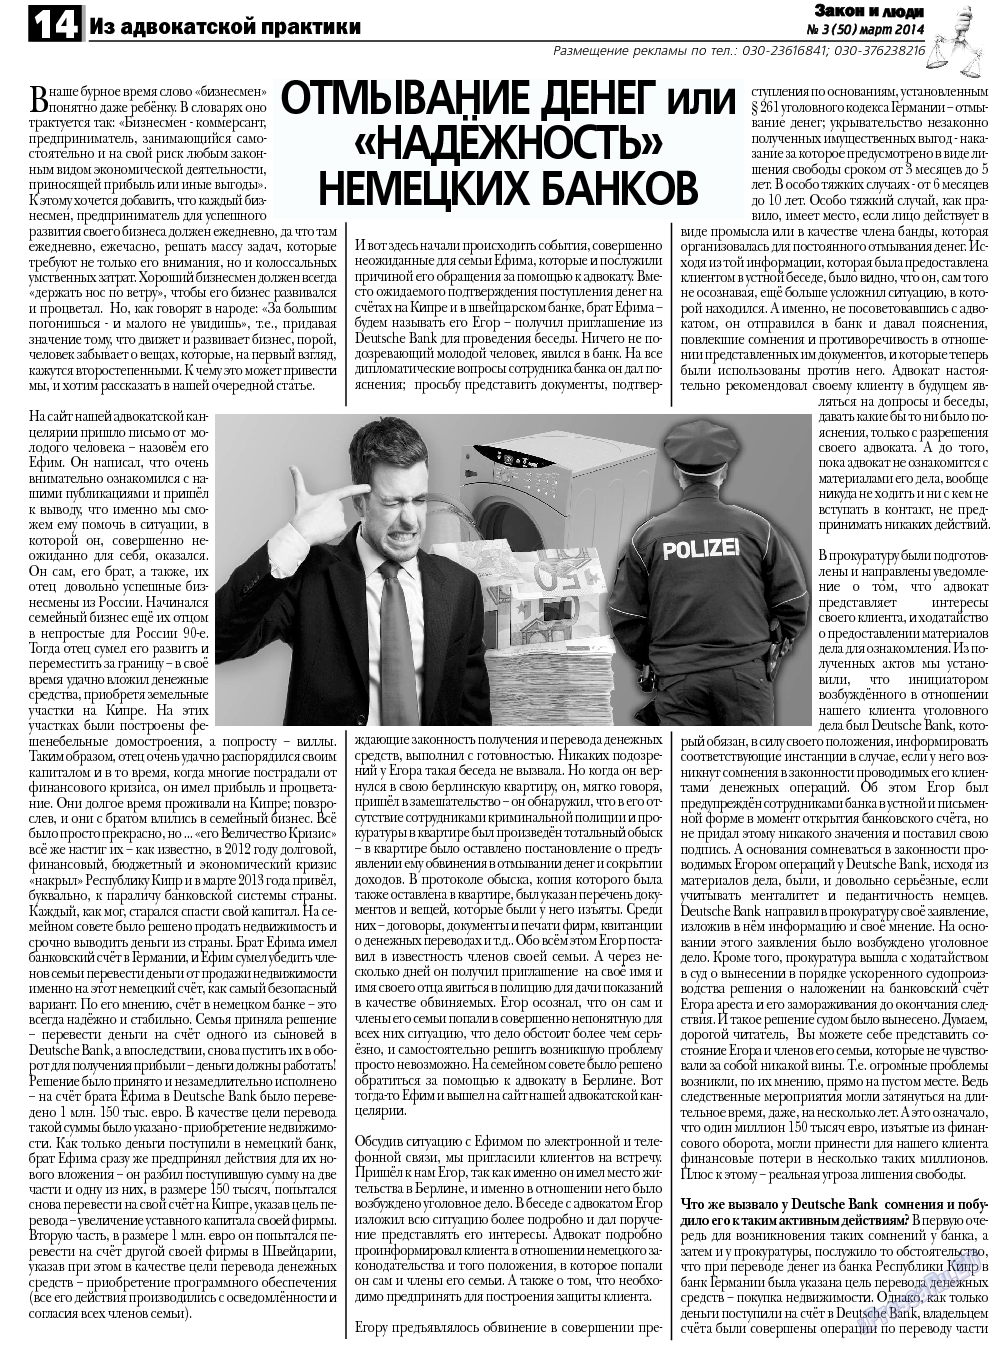 Закон и люди, газета. 2014 №3 стр.14